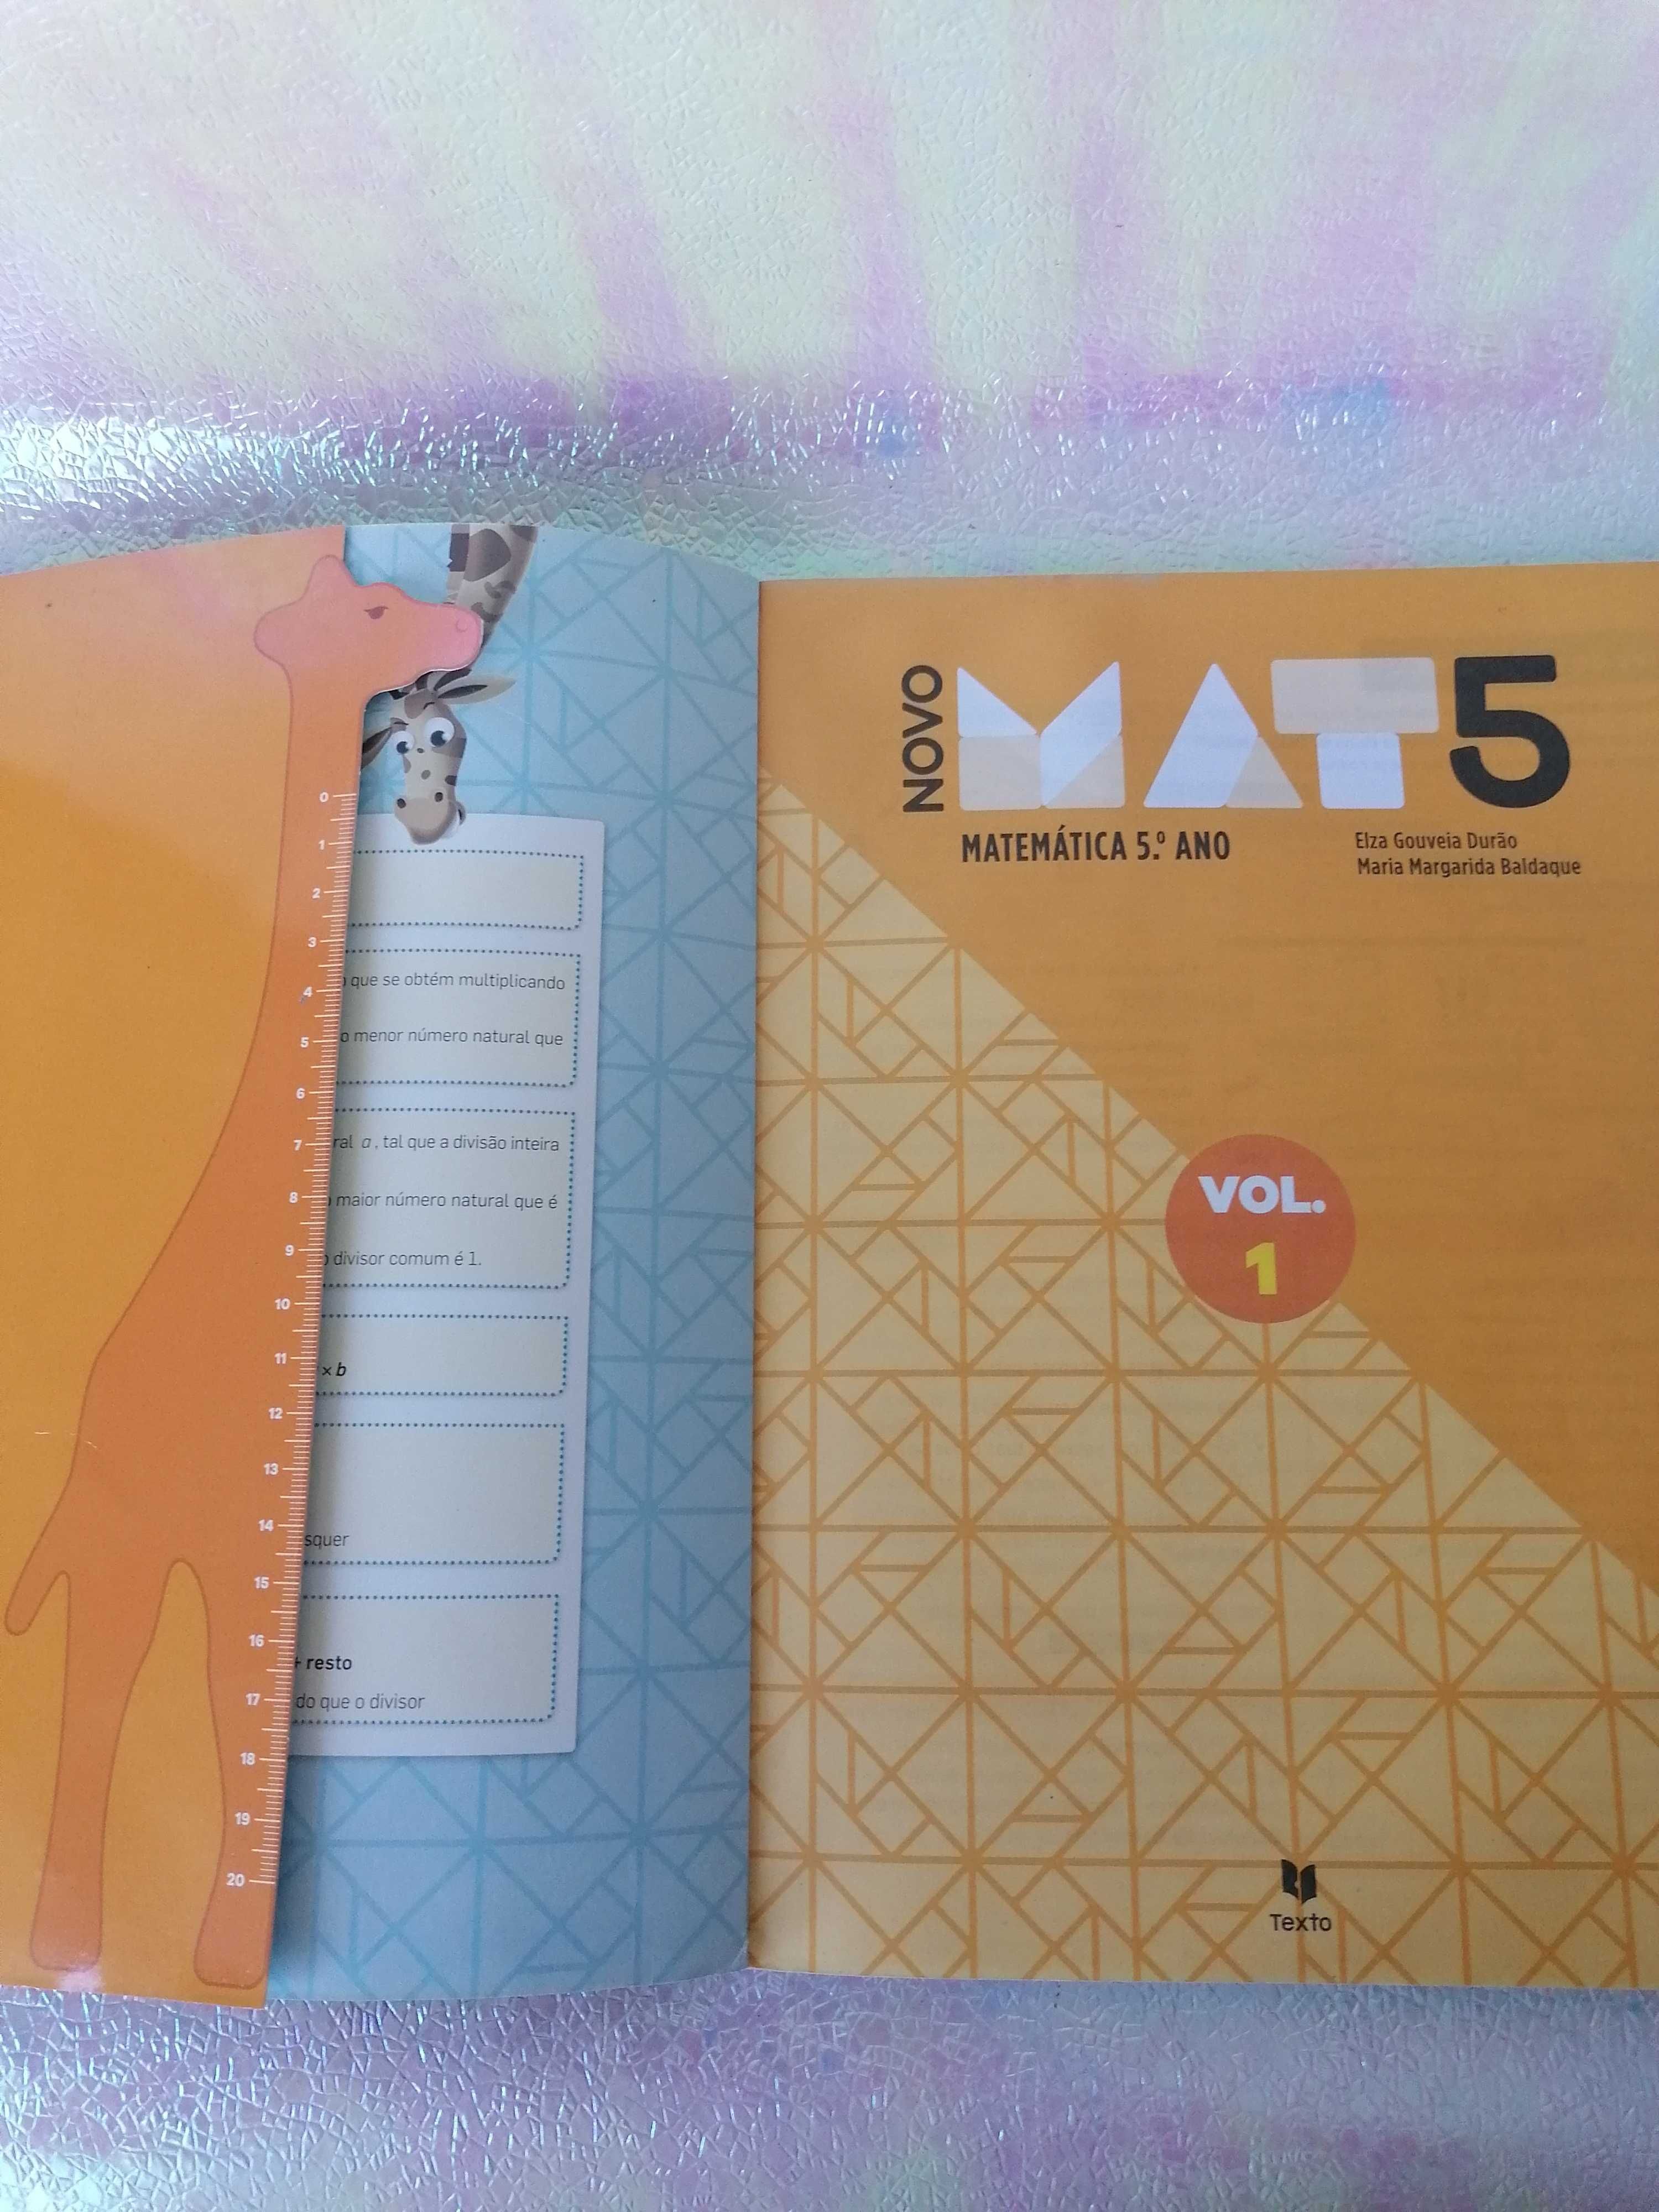 Livro de matemática 5°ano, volume 1  MAT 5